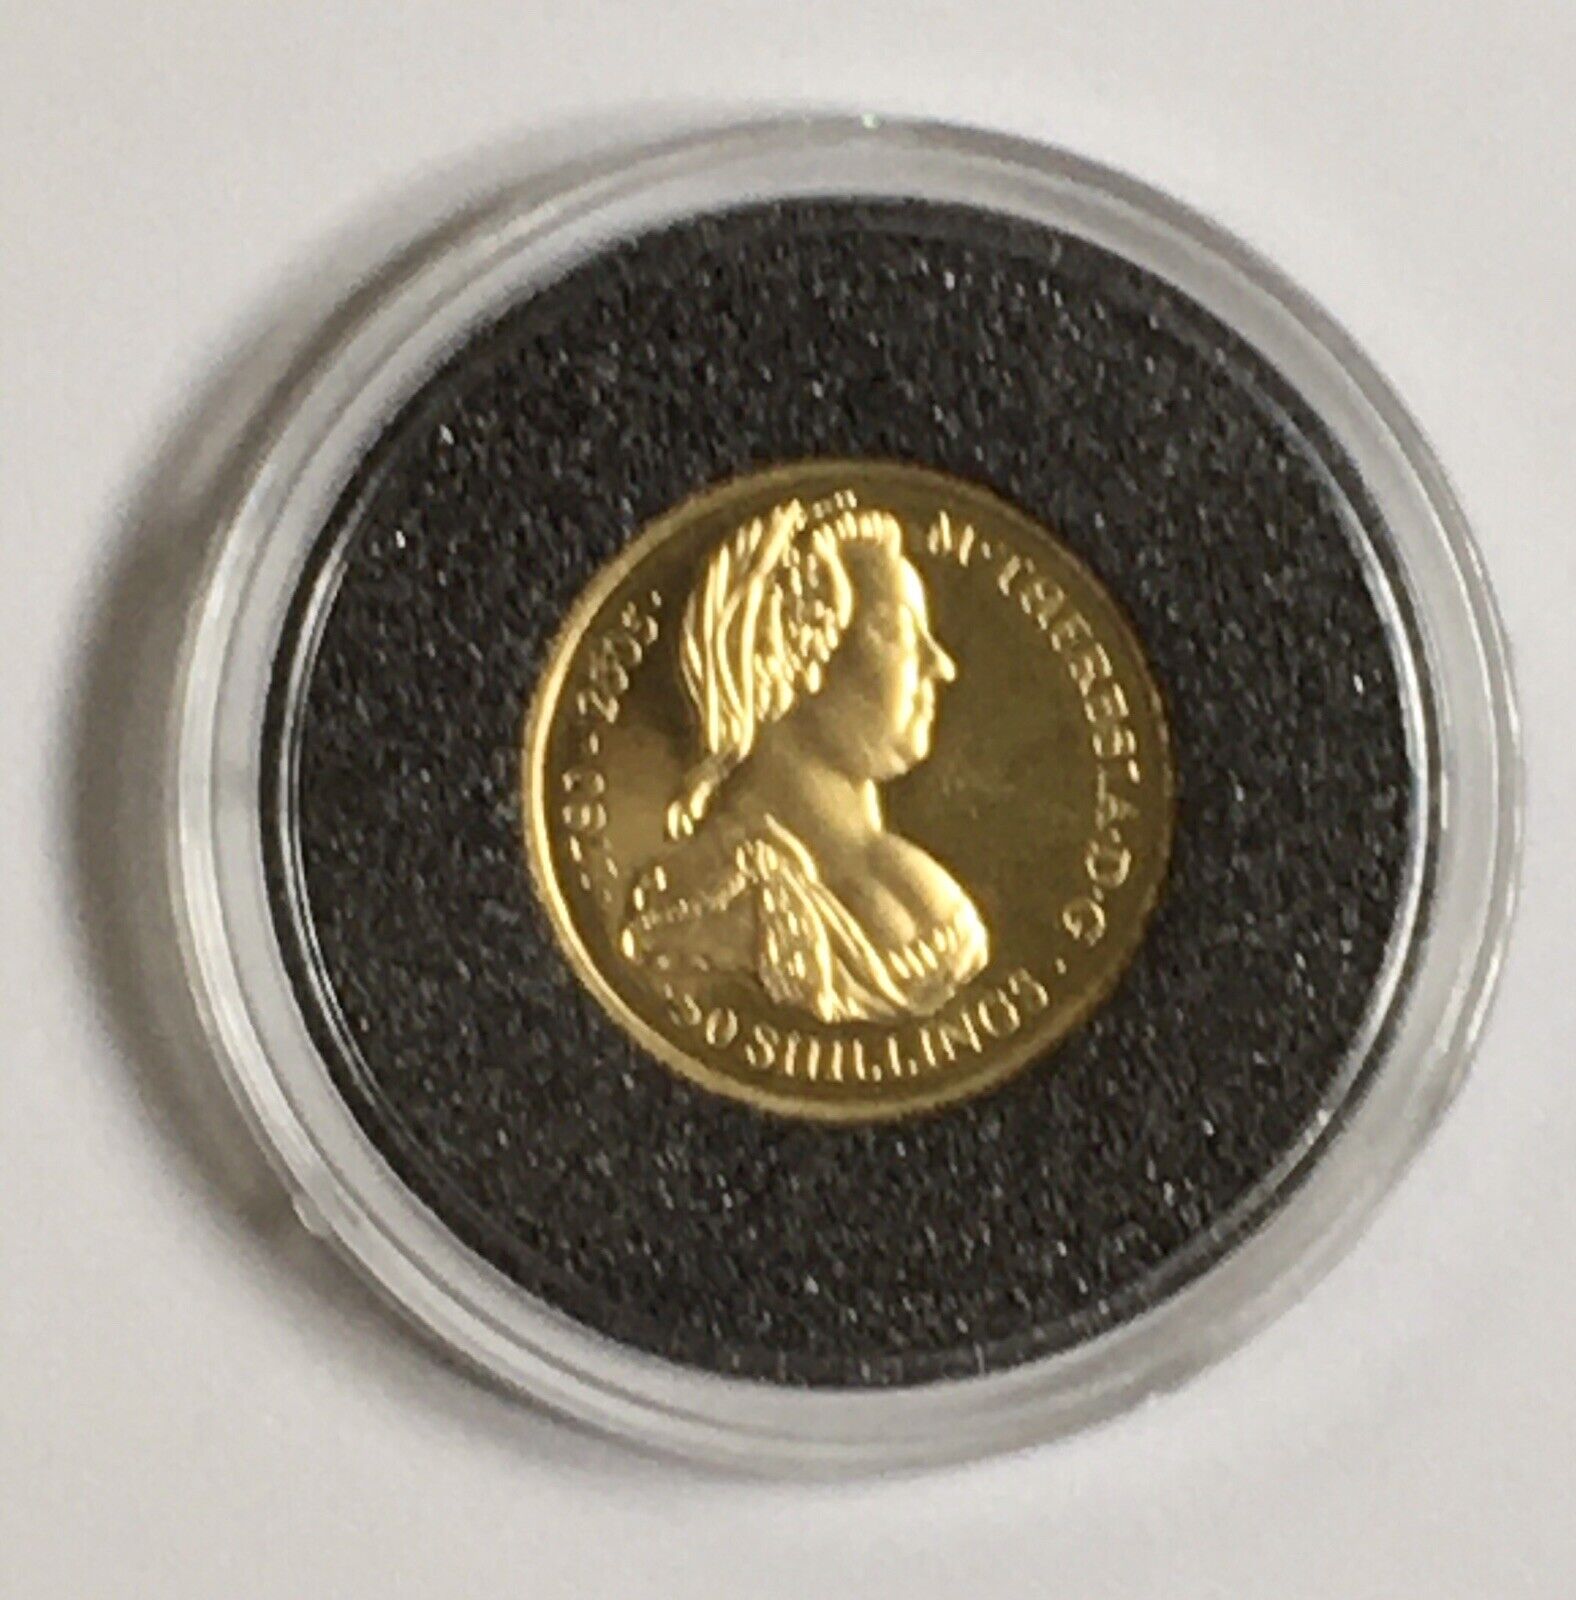 2005 Somalia 50 Shillings 1/25 Oz. Gold Coin In Case